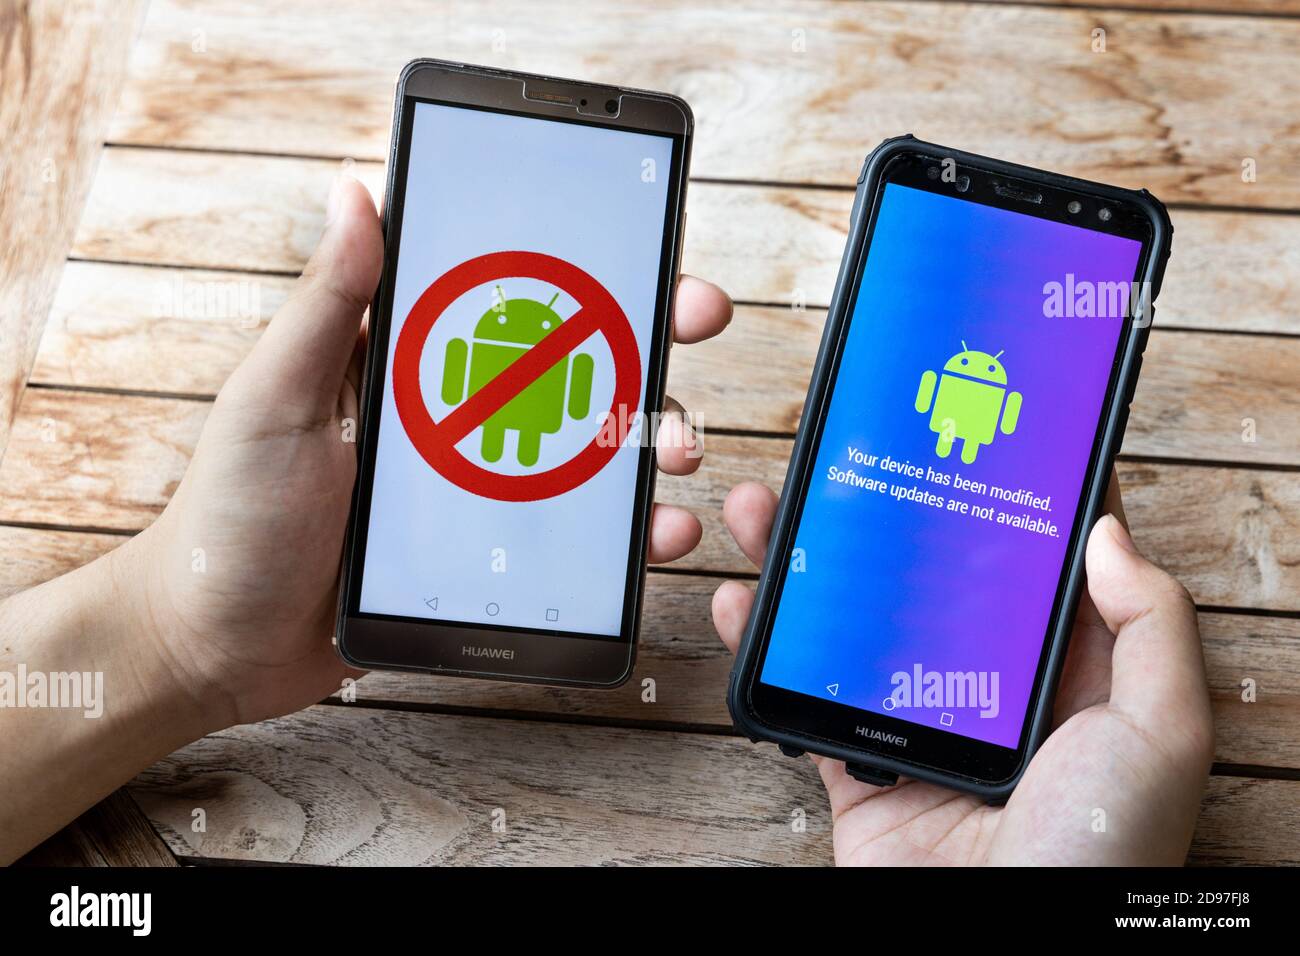 Personne détenant un téléphone Huawei avec un message Android les mises à jour logicielles ne sont pas disponibles. Les entreprises américaines ont commencé à réduire leurs ventes à la société chinoise de télécommunications Huawei Banque D'Images